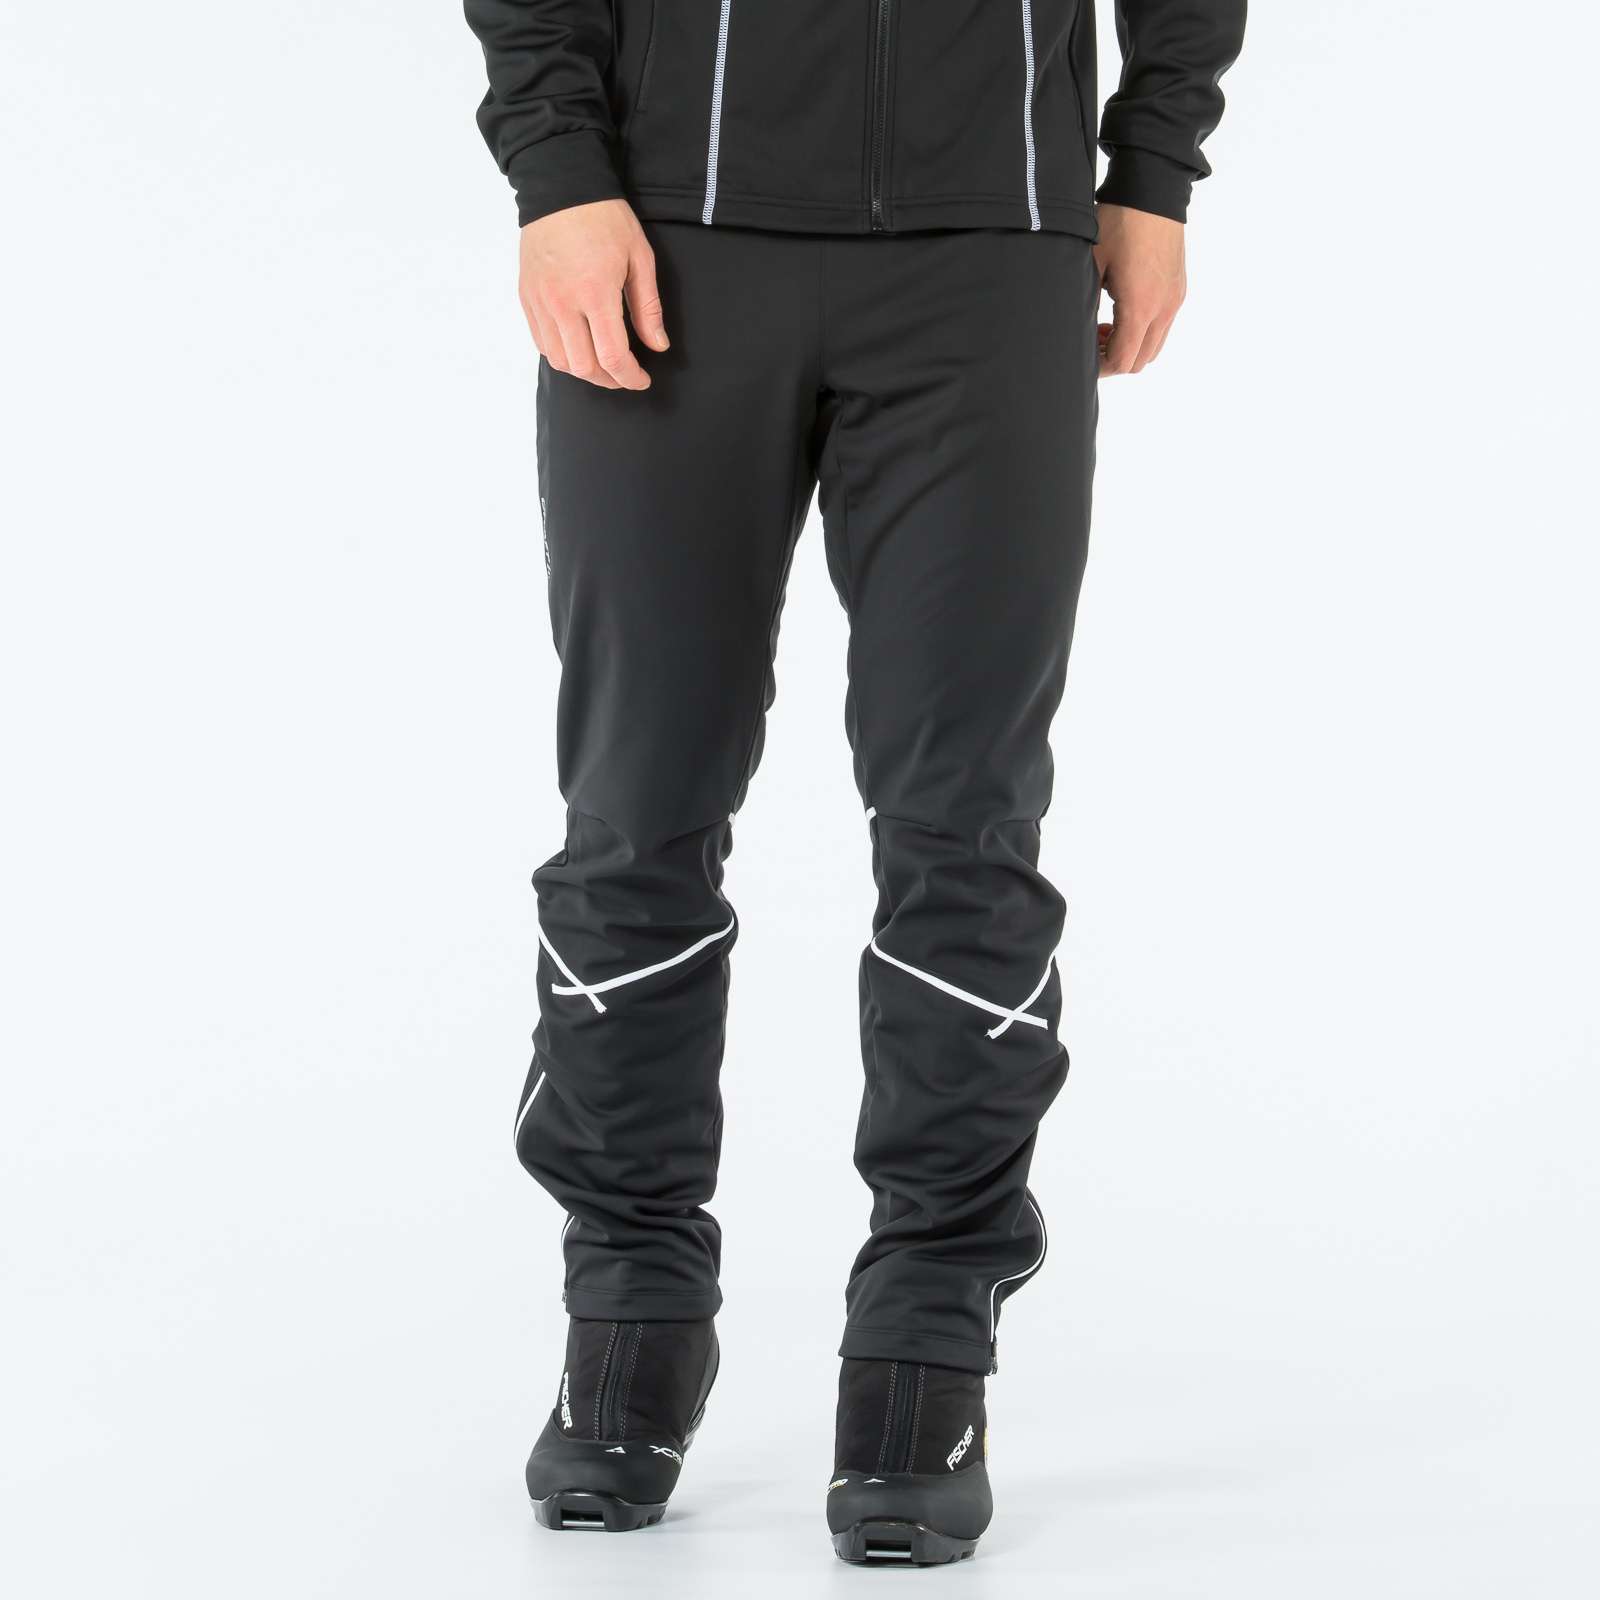 Утепленные лыжные брюки Craft Force мужские купить в интернет-магазине